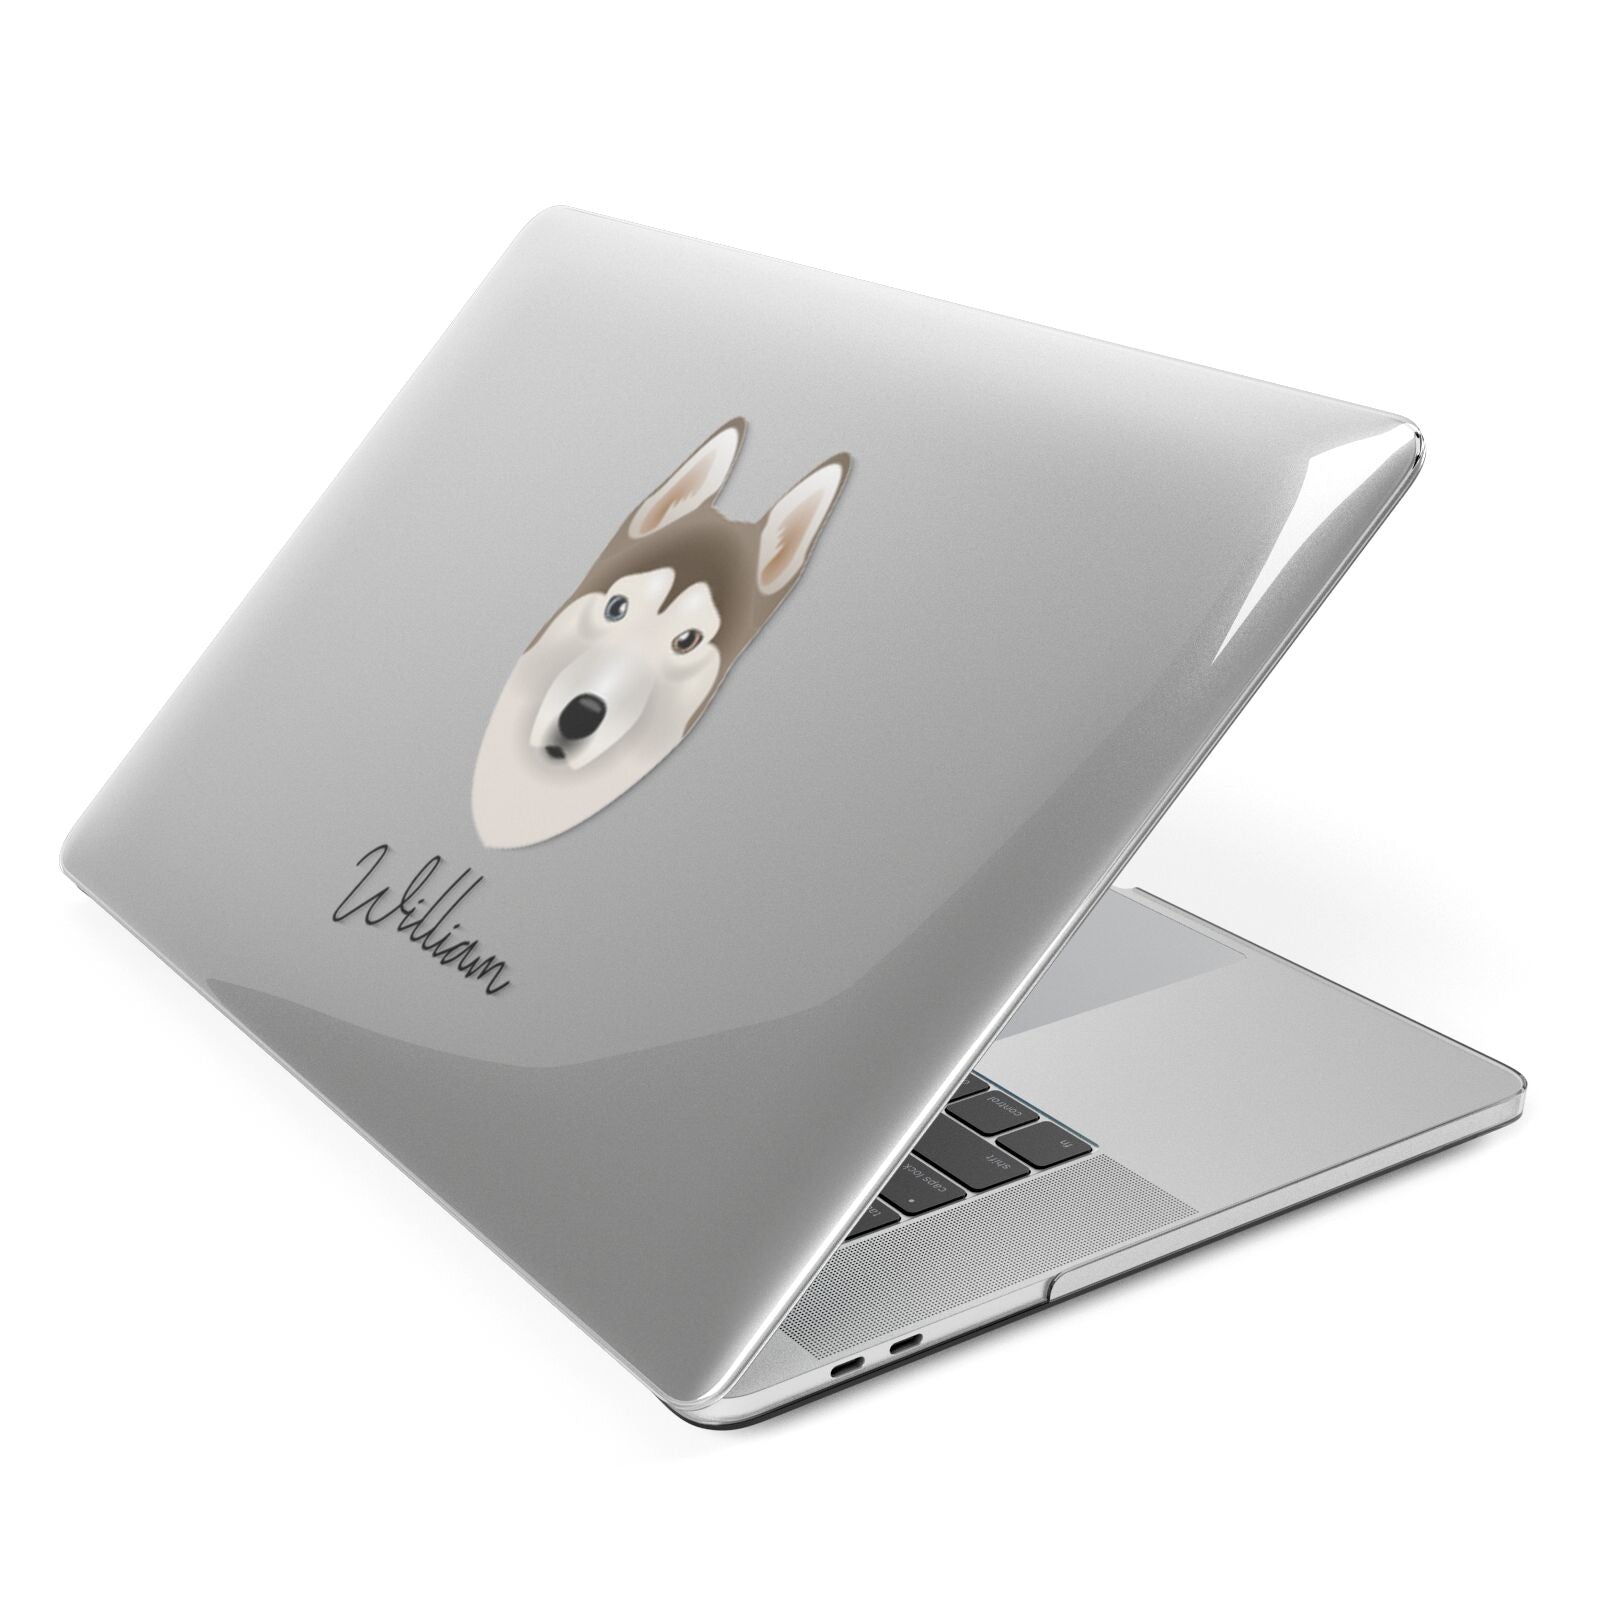 Siberian Husky Personalised Apple MacBook Case Side View